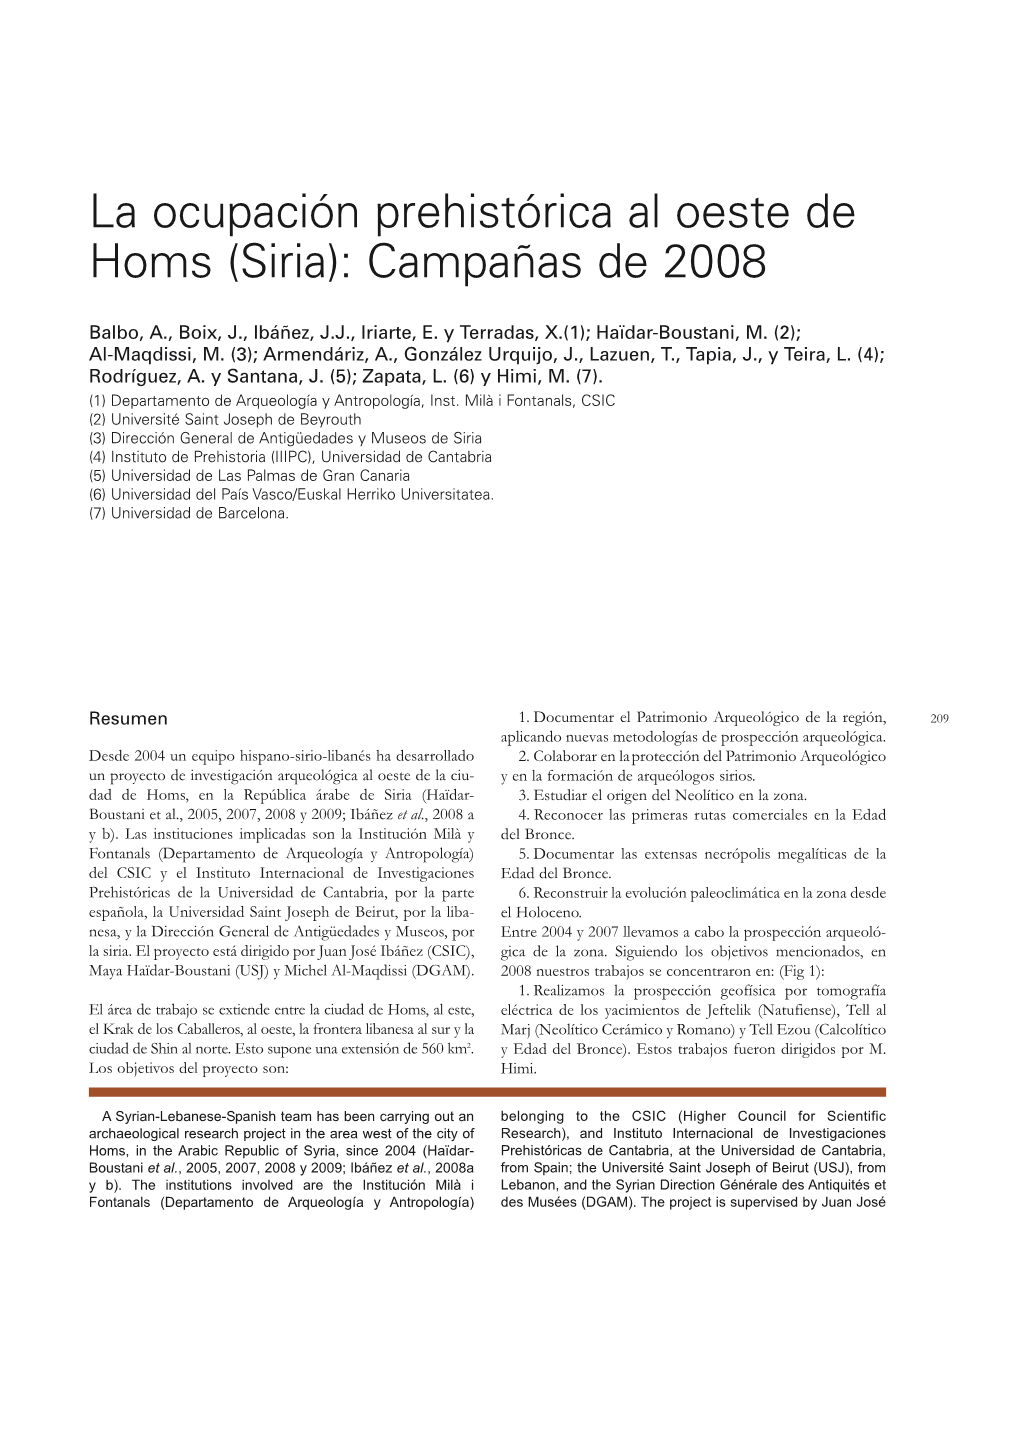 Terradas-2009-La Ocupación Prehistórica Al Oeste De Homs. Campañas De 2008.Pdf